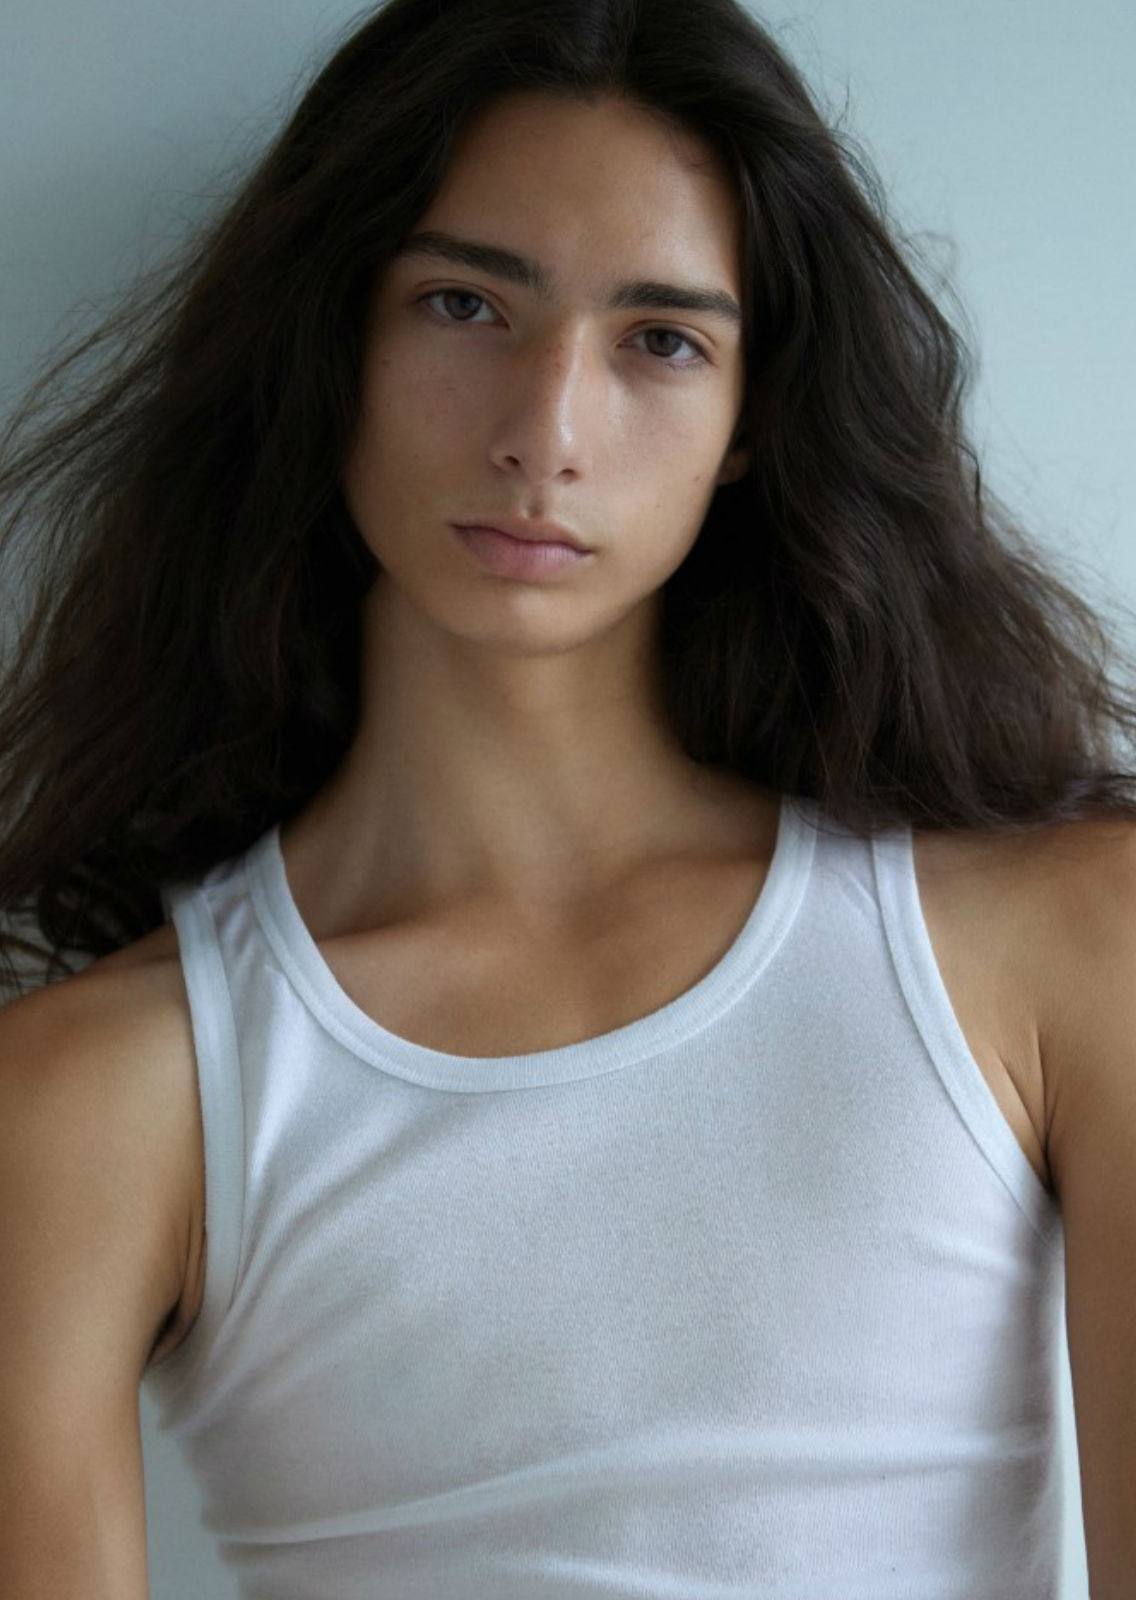 ISRAEL LOPEZ. Carmen Duran Model Agency.